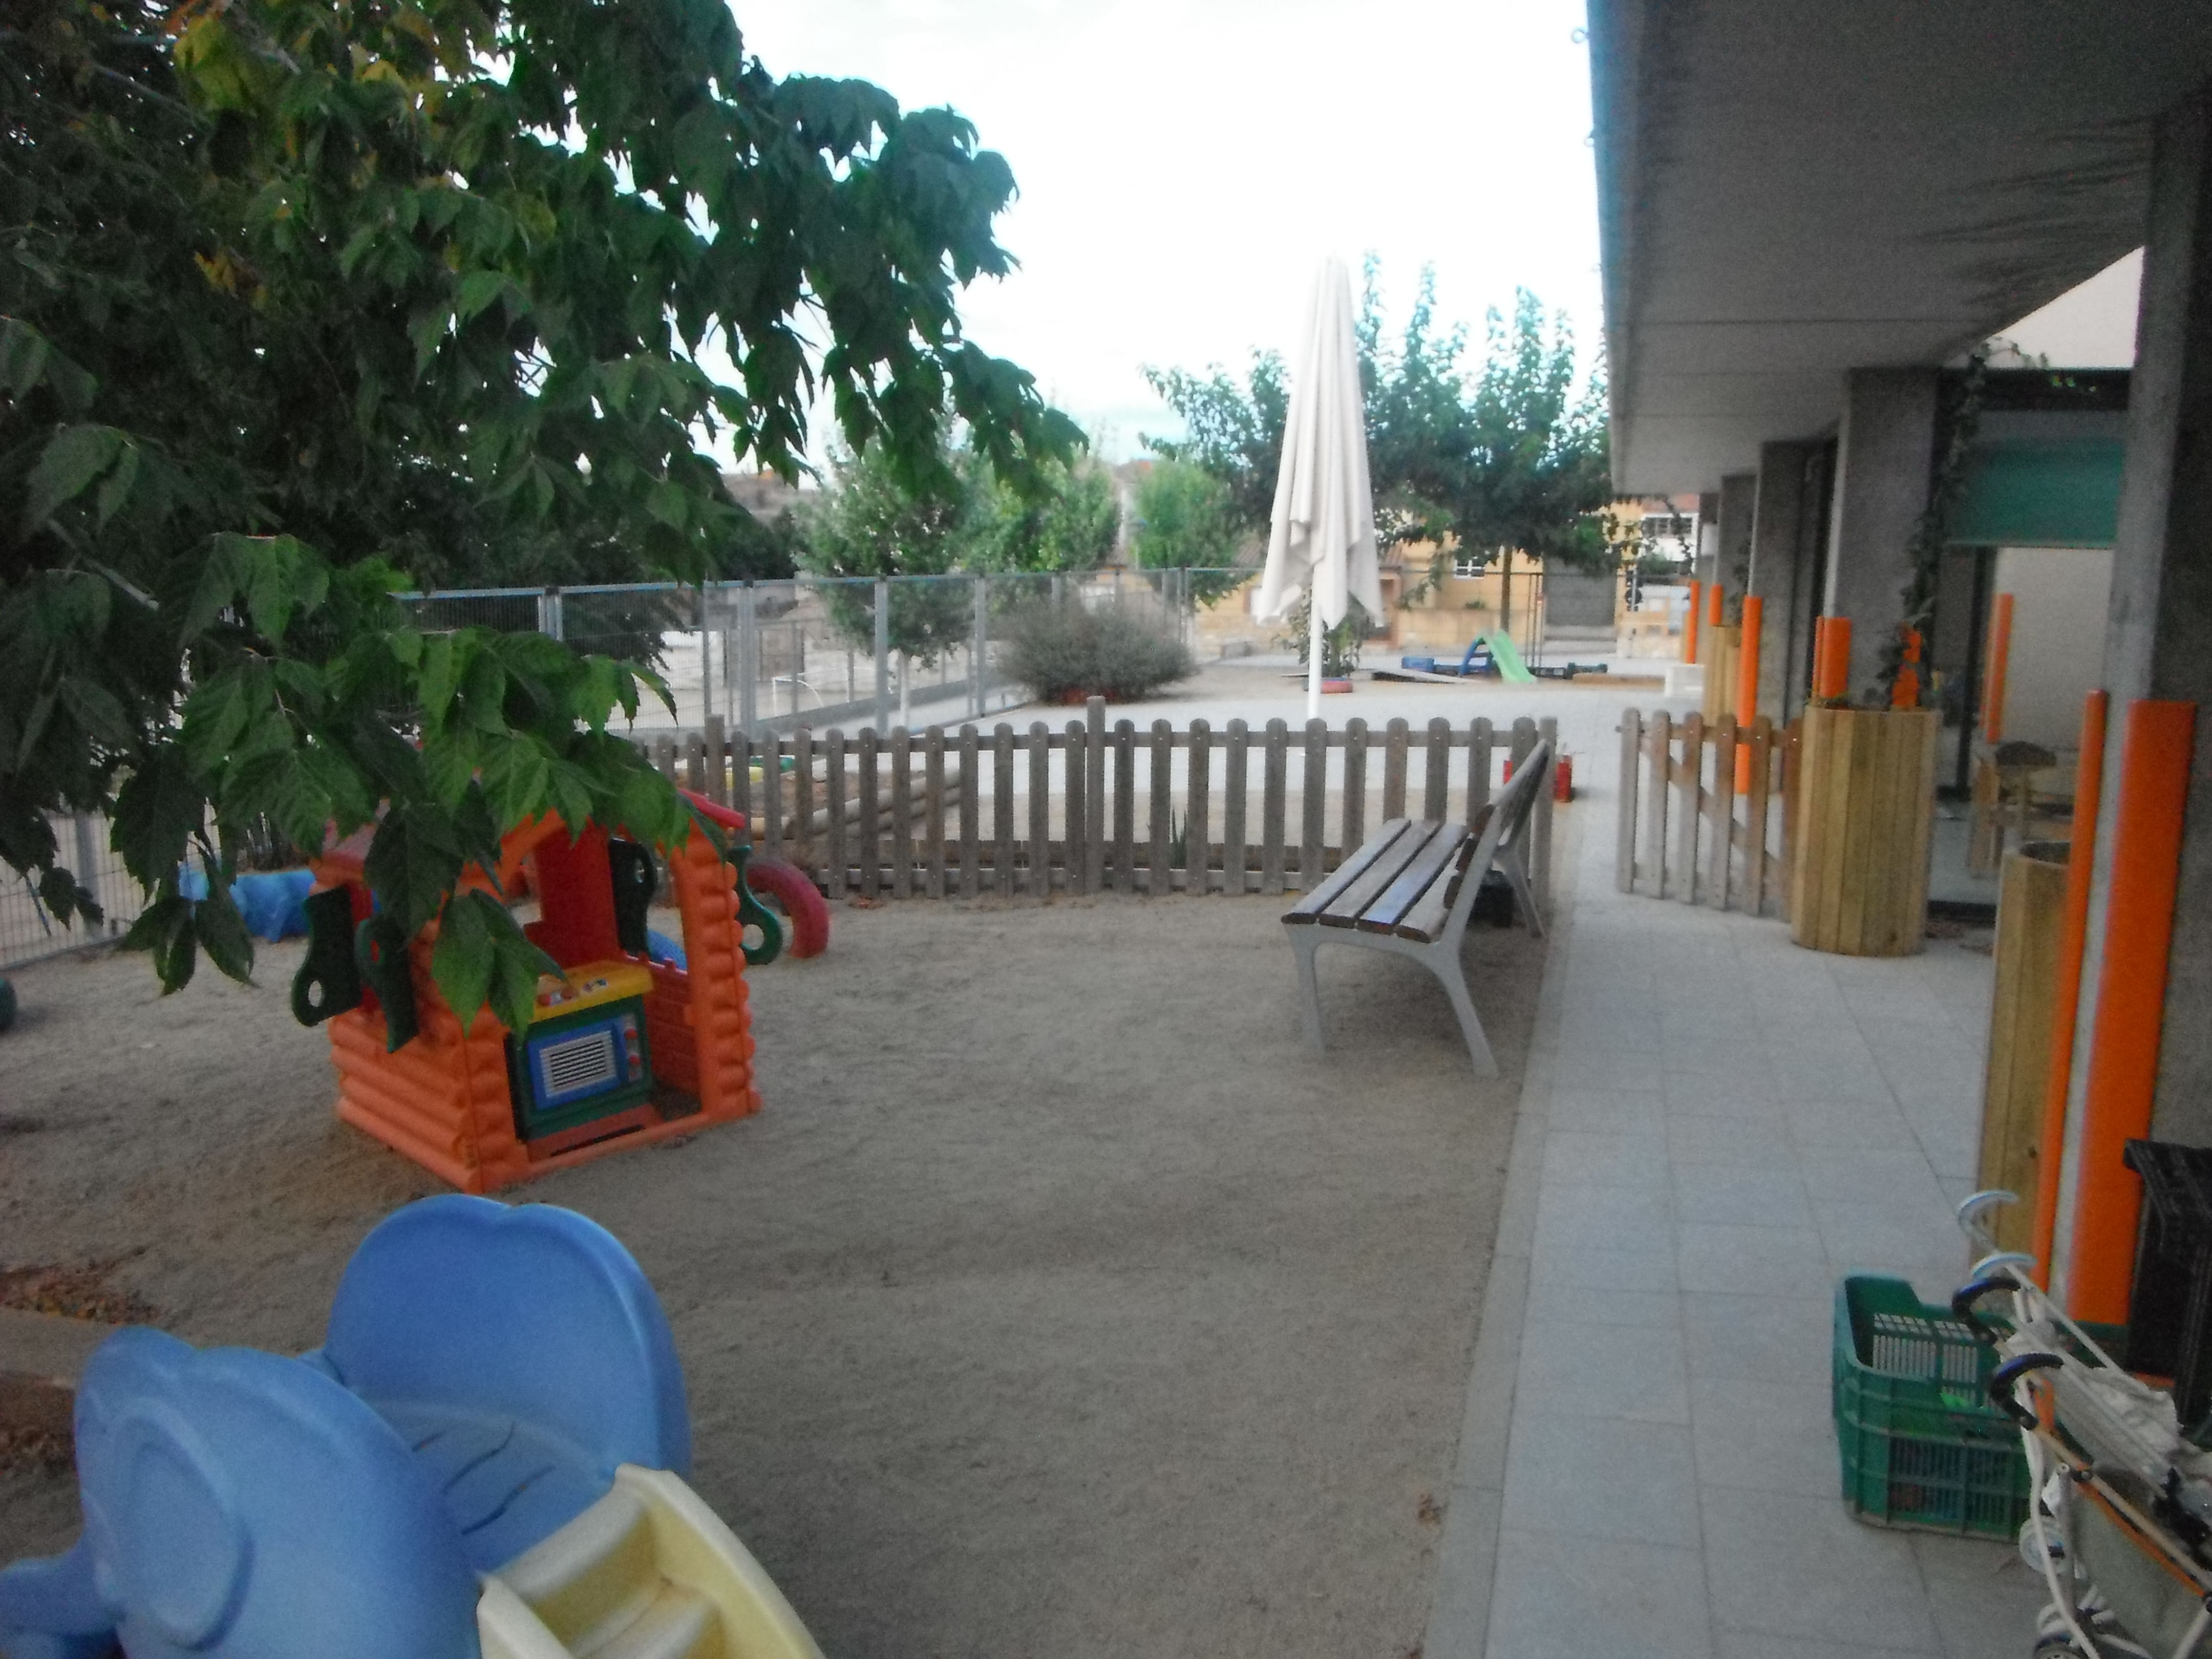 Vista del jardí de l’Escola Bressol El Patufet durant el curs 2012-2013. Ja hi havia l’hort i les jardineres a les columnes de formigó.